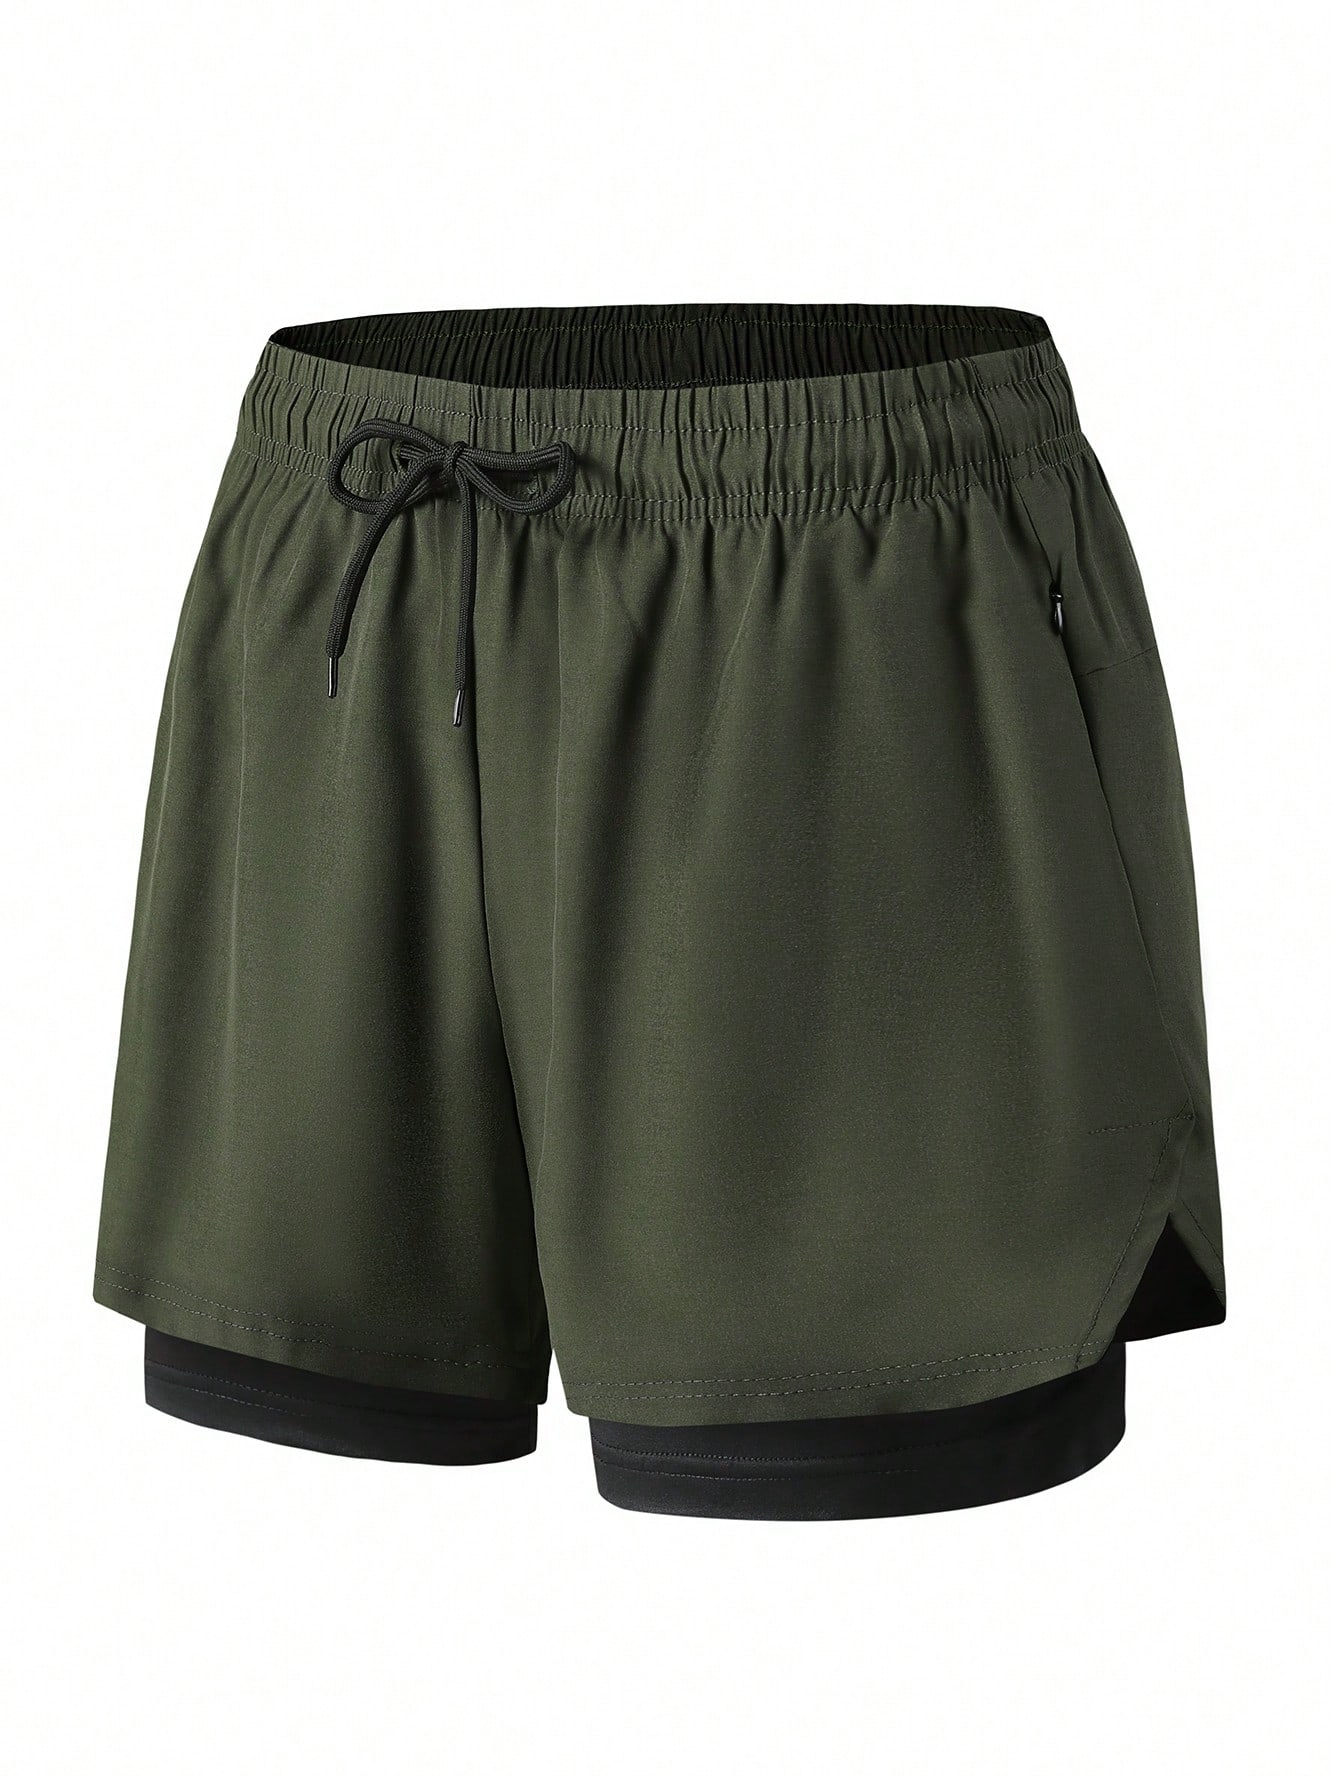 Эластичные, быстросохнущие мужские спортивные шорты со встроенными трусами, армейский зеленый